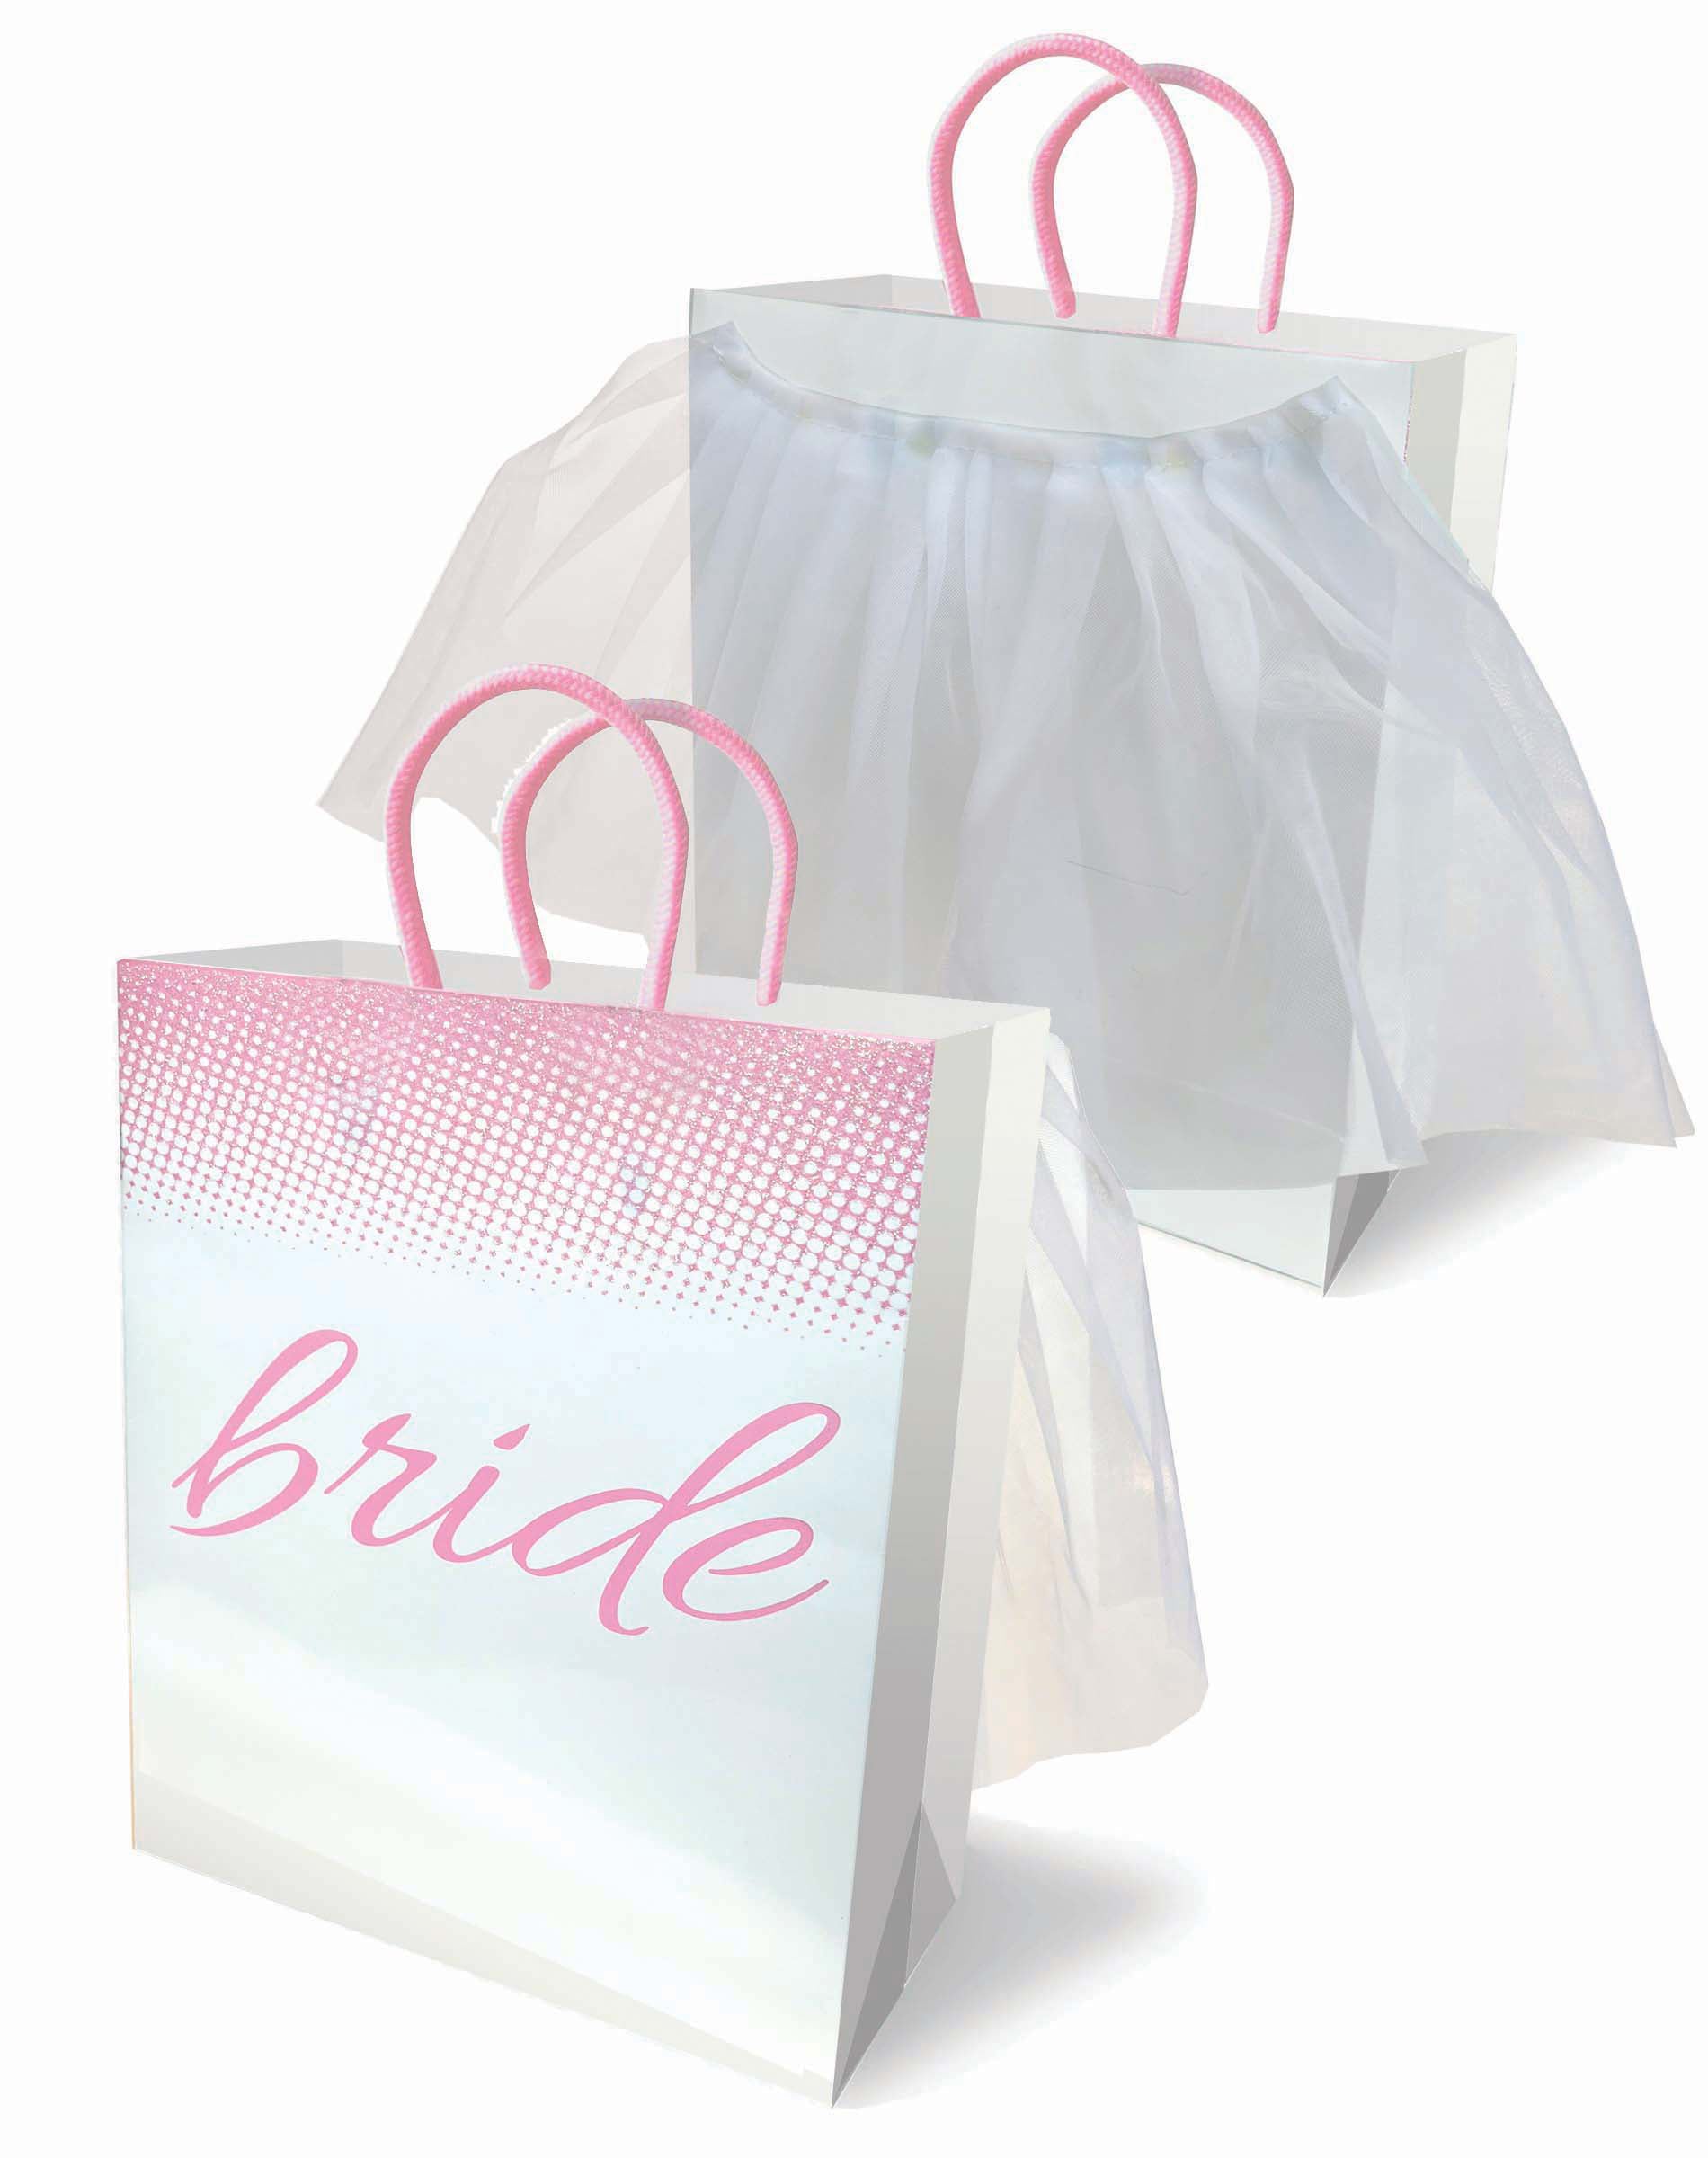 Bride Veil - Gift Bag-1